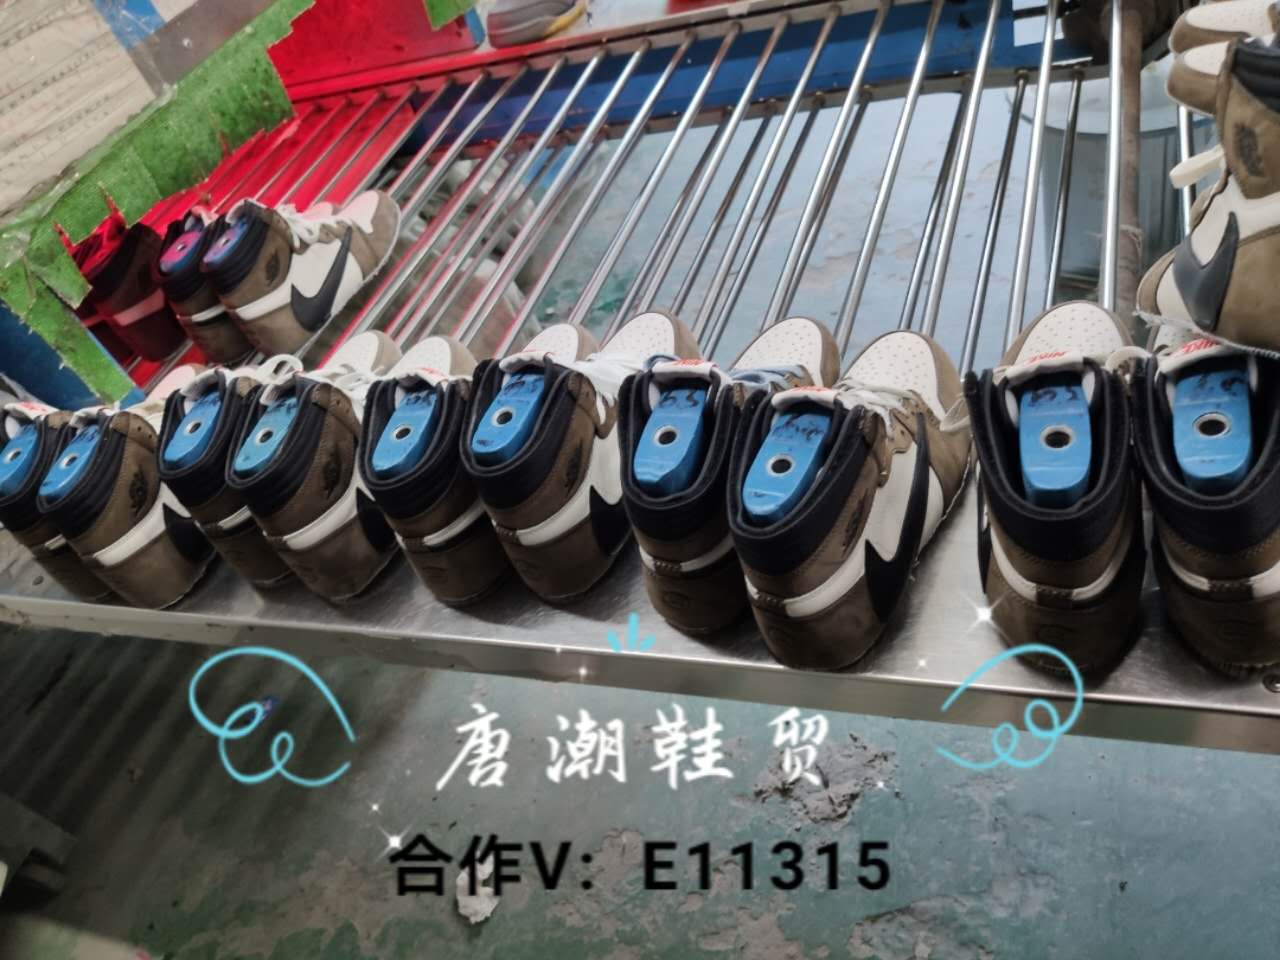 耐克运动鞋潮男,阿迪达斯潮鞋推荐_提供优质潮牌运动鞋货源，兼职免费代理一件代发